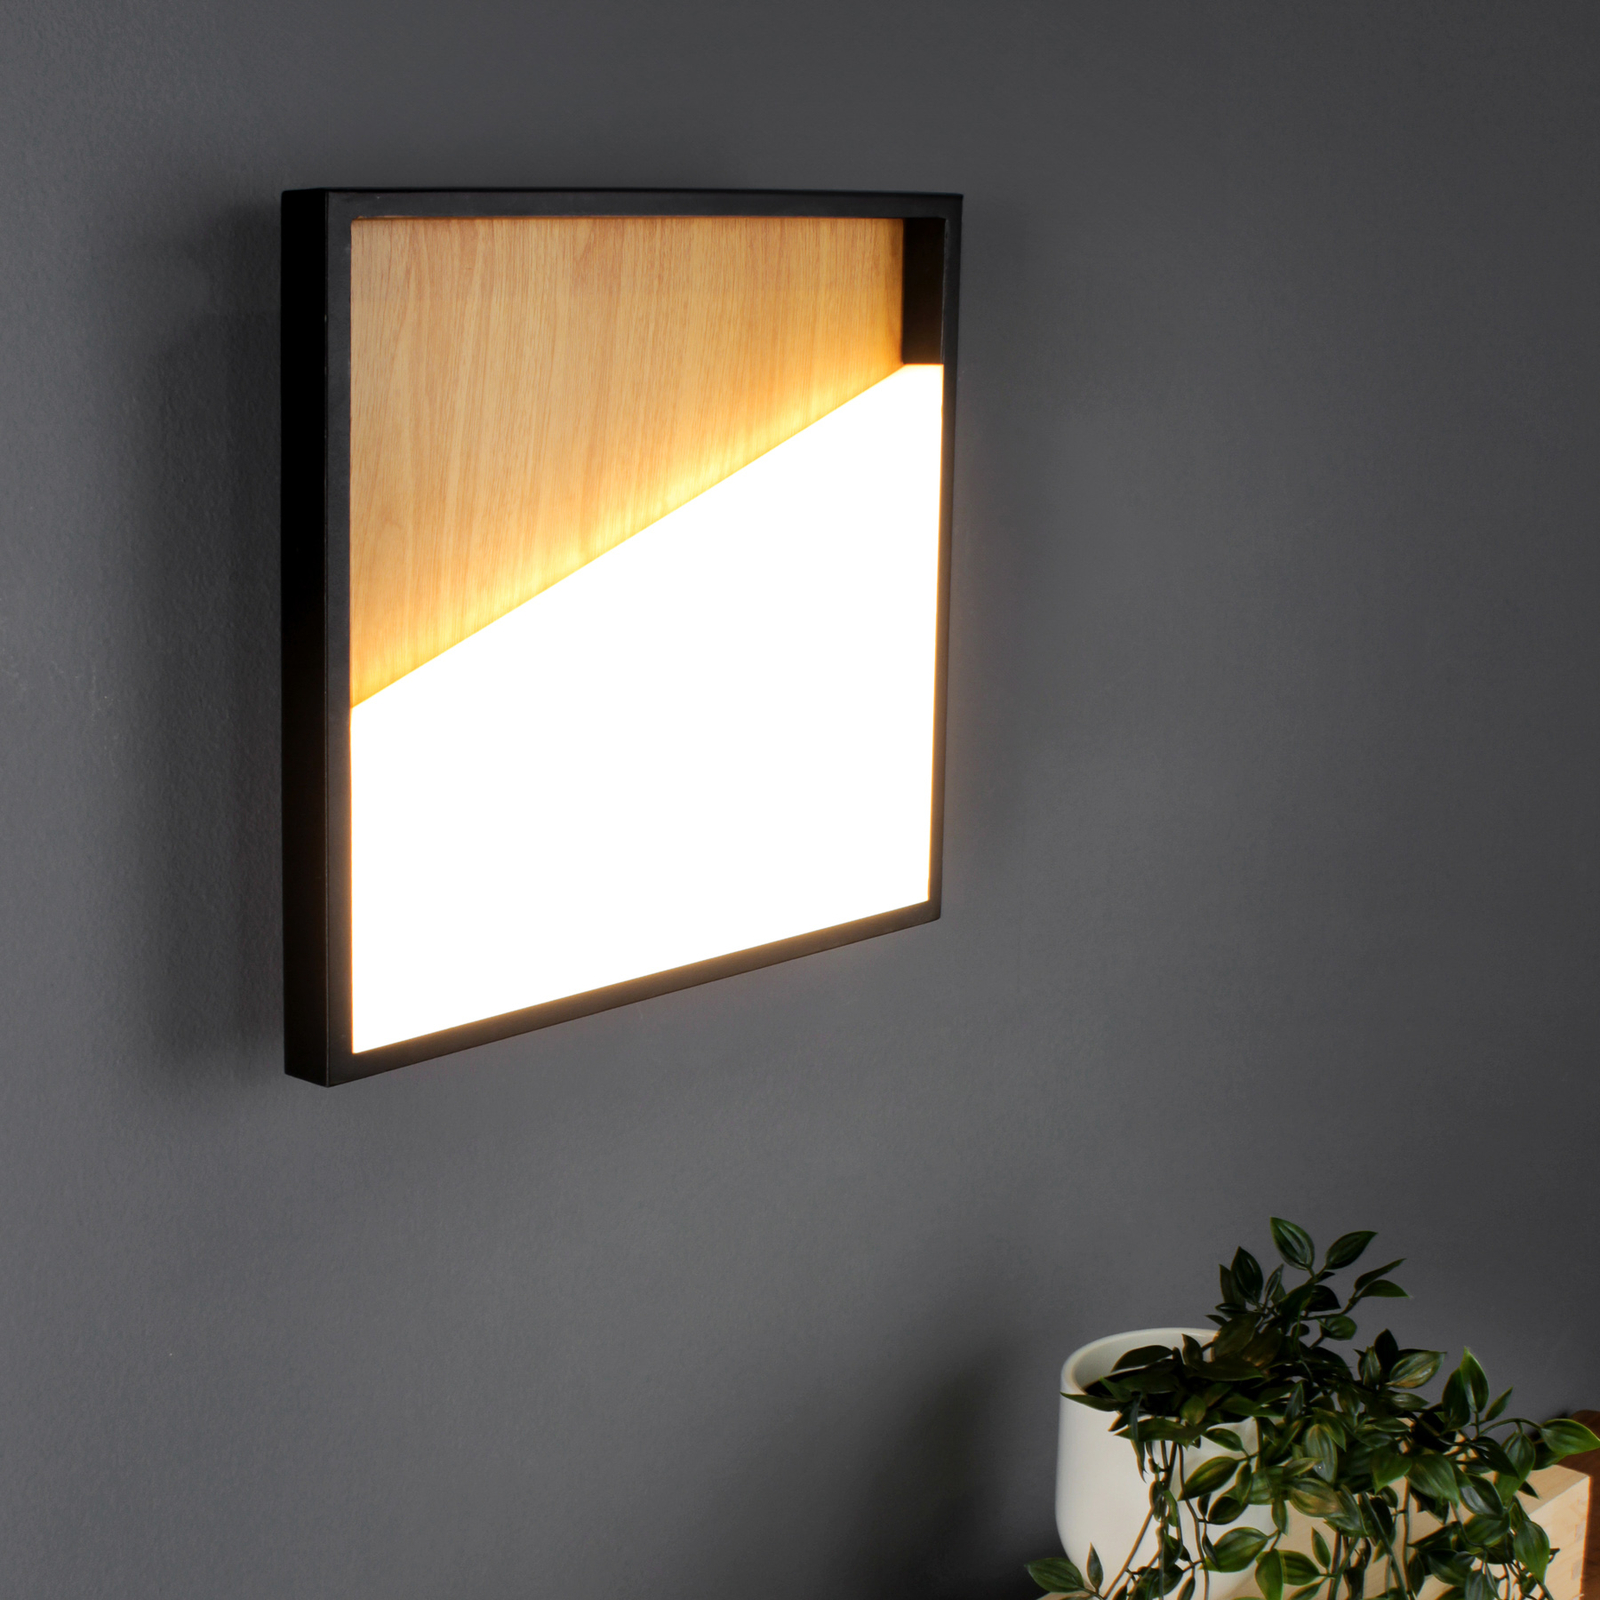 LED-Wandleuchte Vista, holz hell/schwarz, 40 x 40 cm